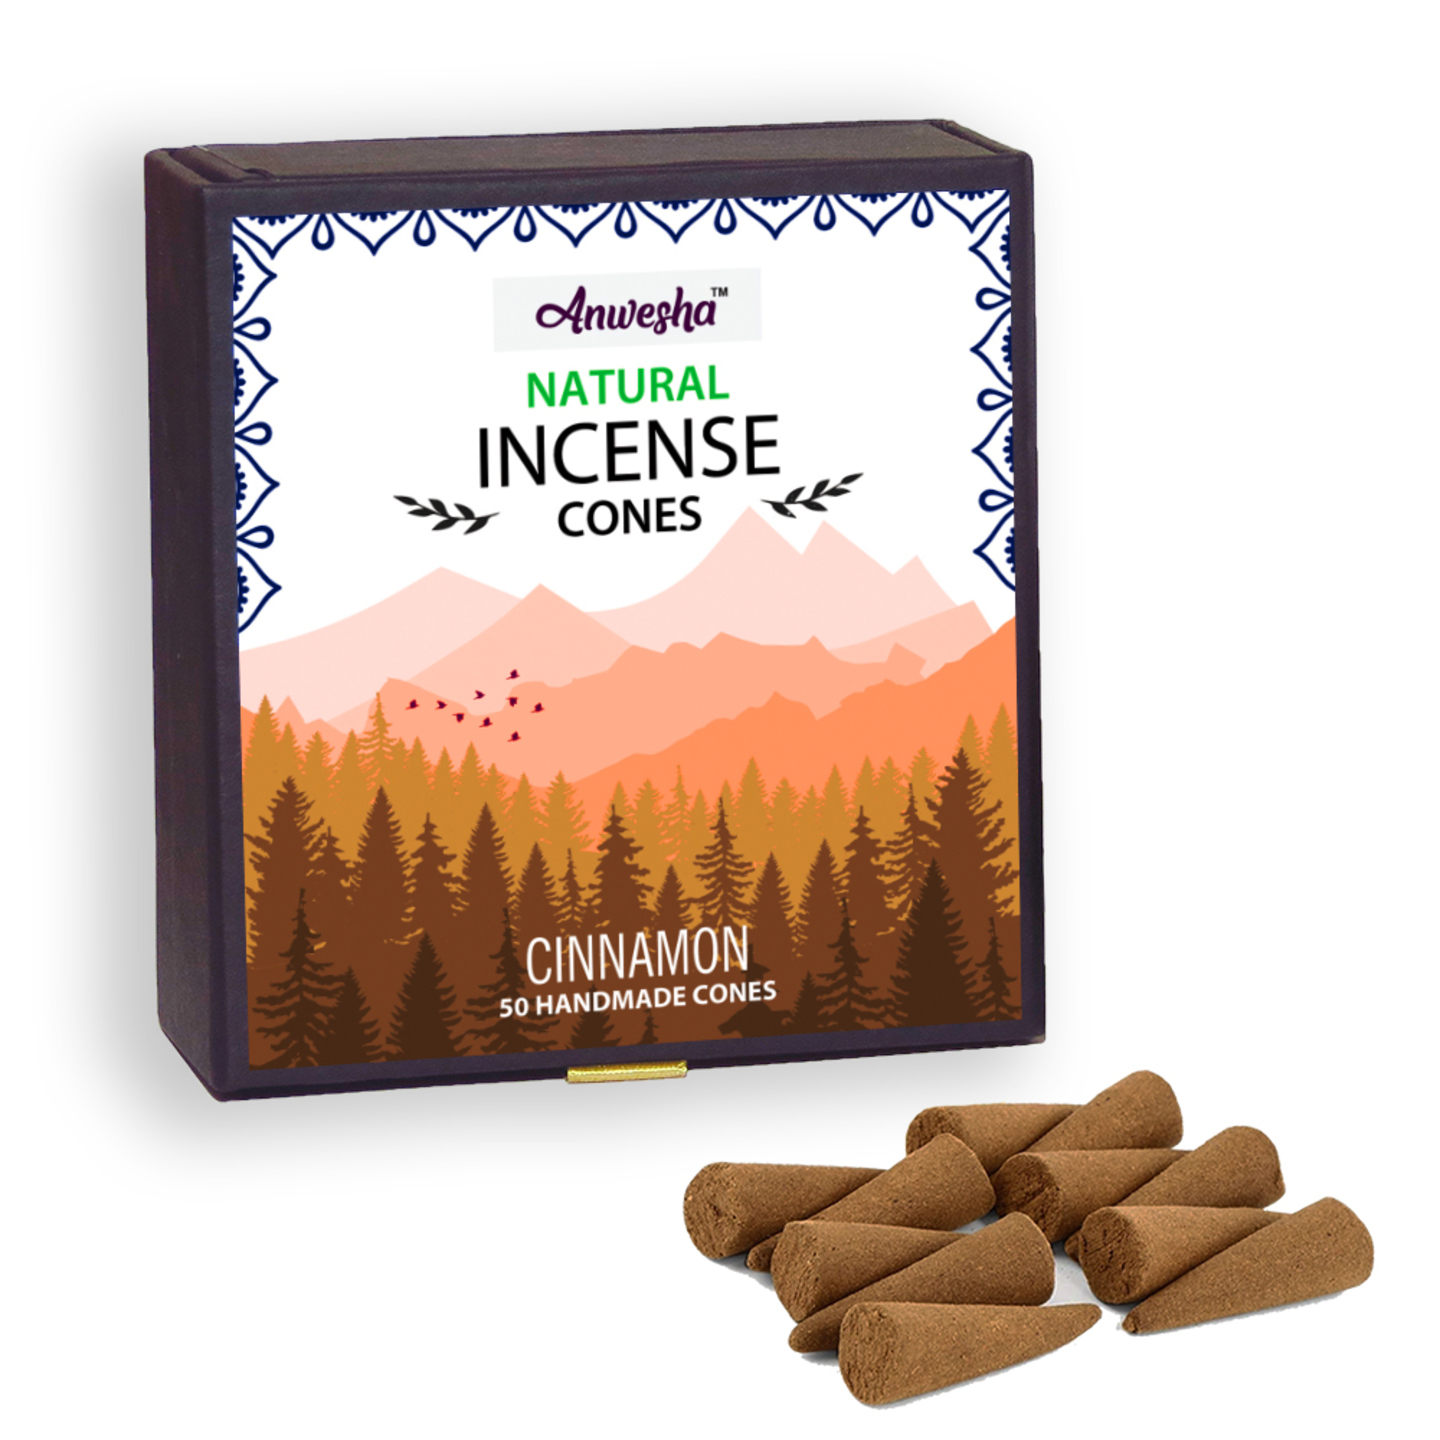 Cinnamon Incense Cones Box - 50 Cones